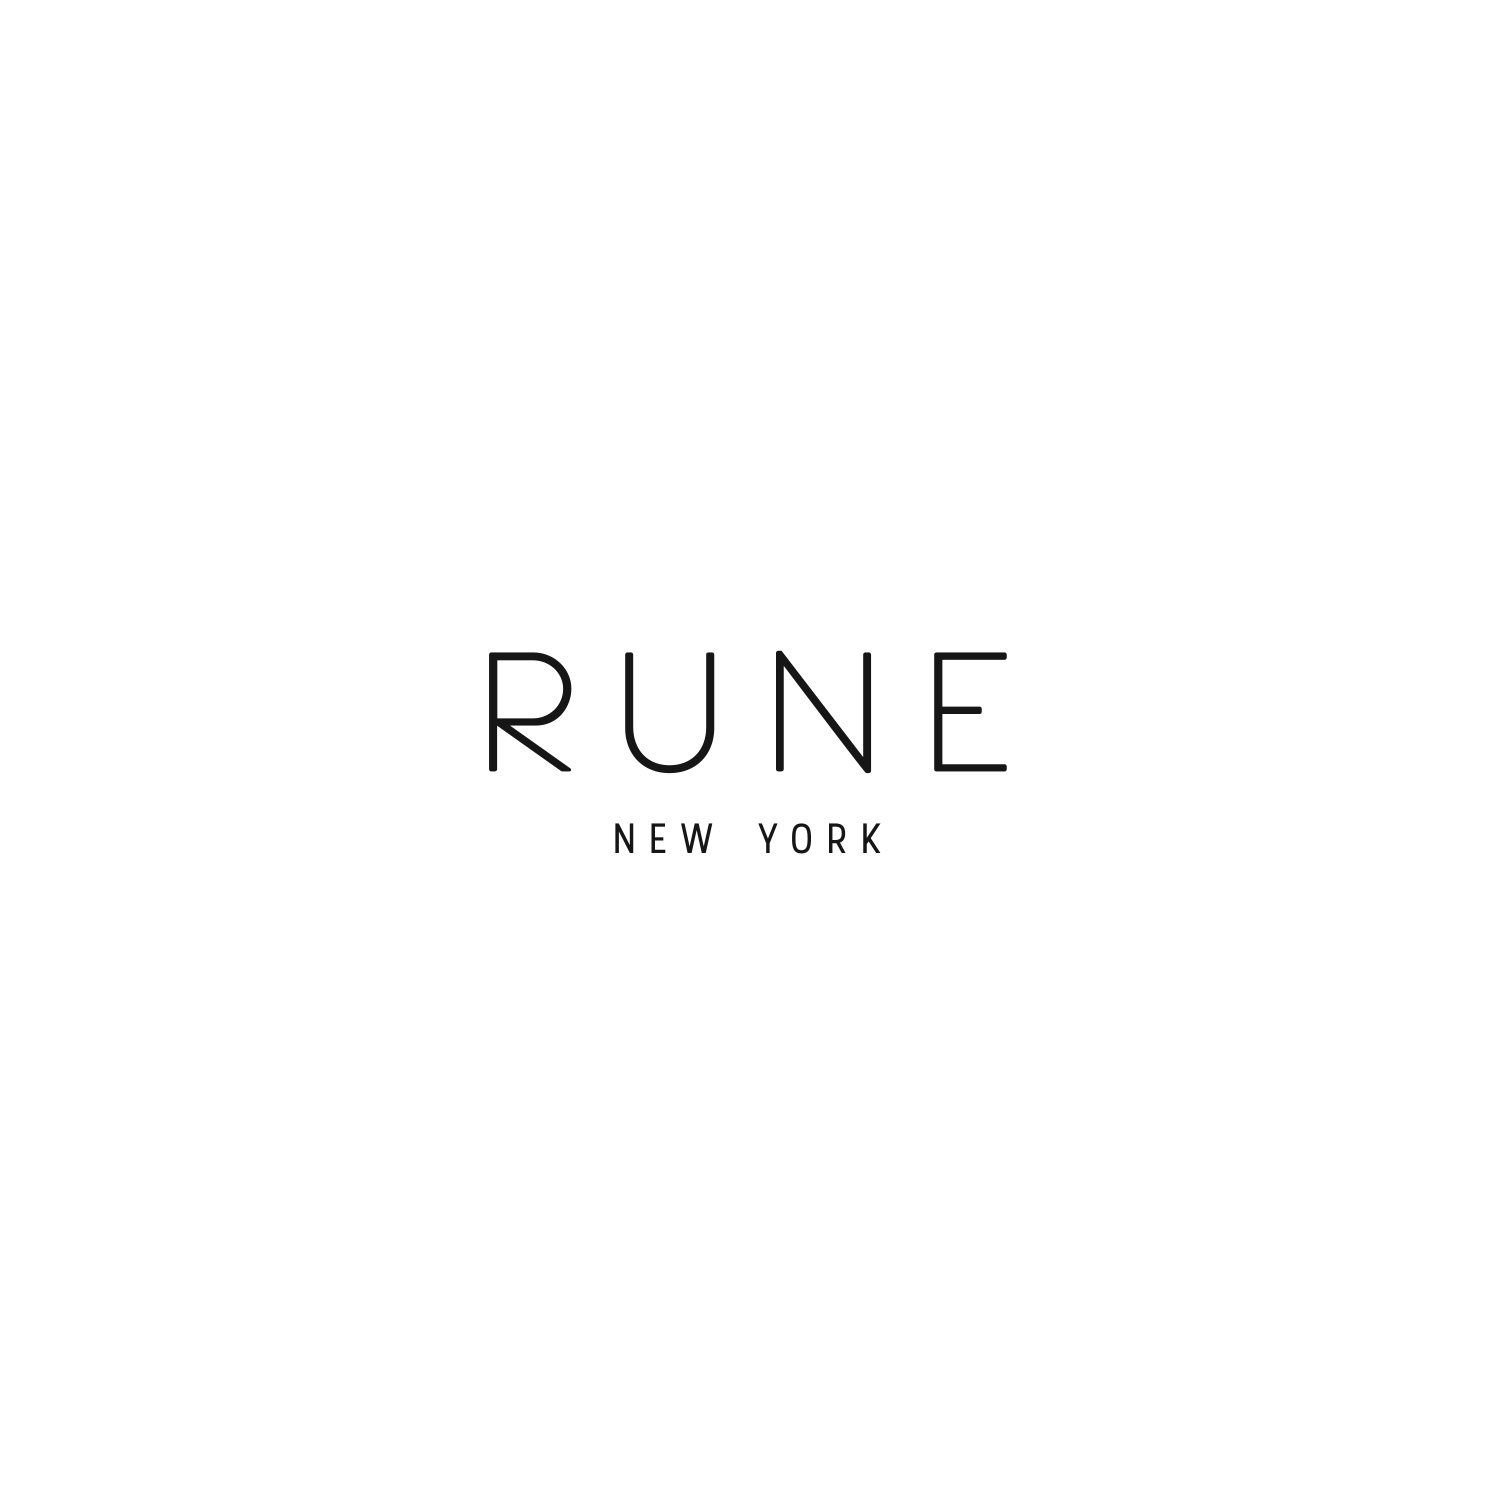 Rune New York Logo Image